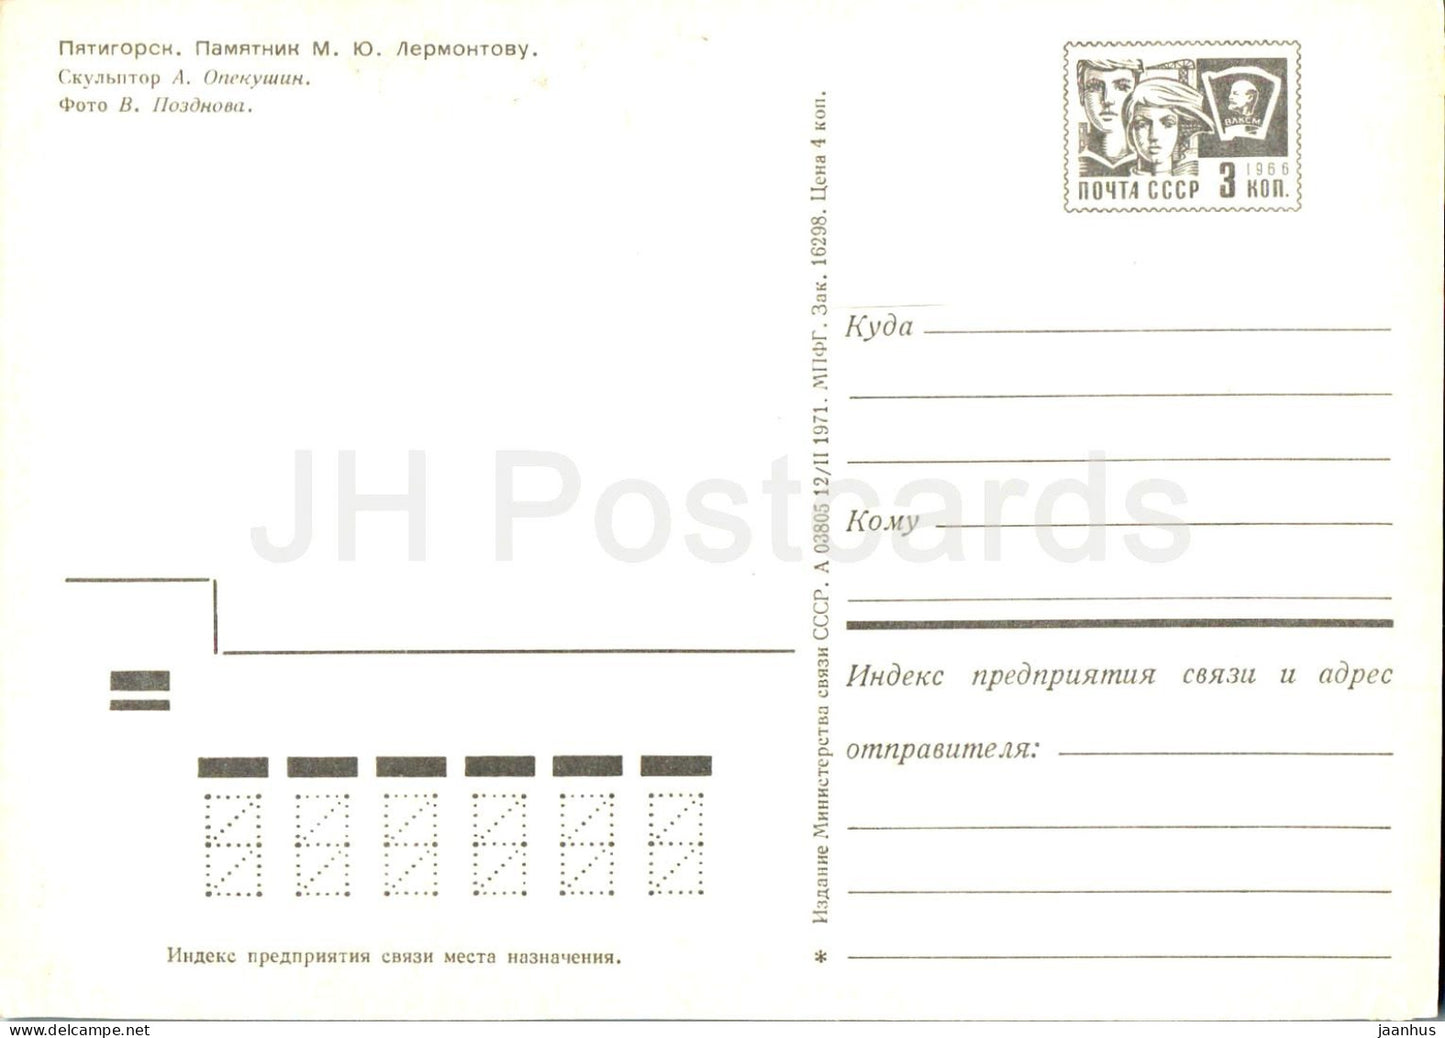 Piatigorsk - monument à l'écrivain russe Lermontov - entier postal - 1971 - Russie URSS - inutilisé 